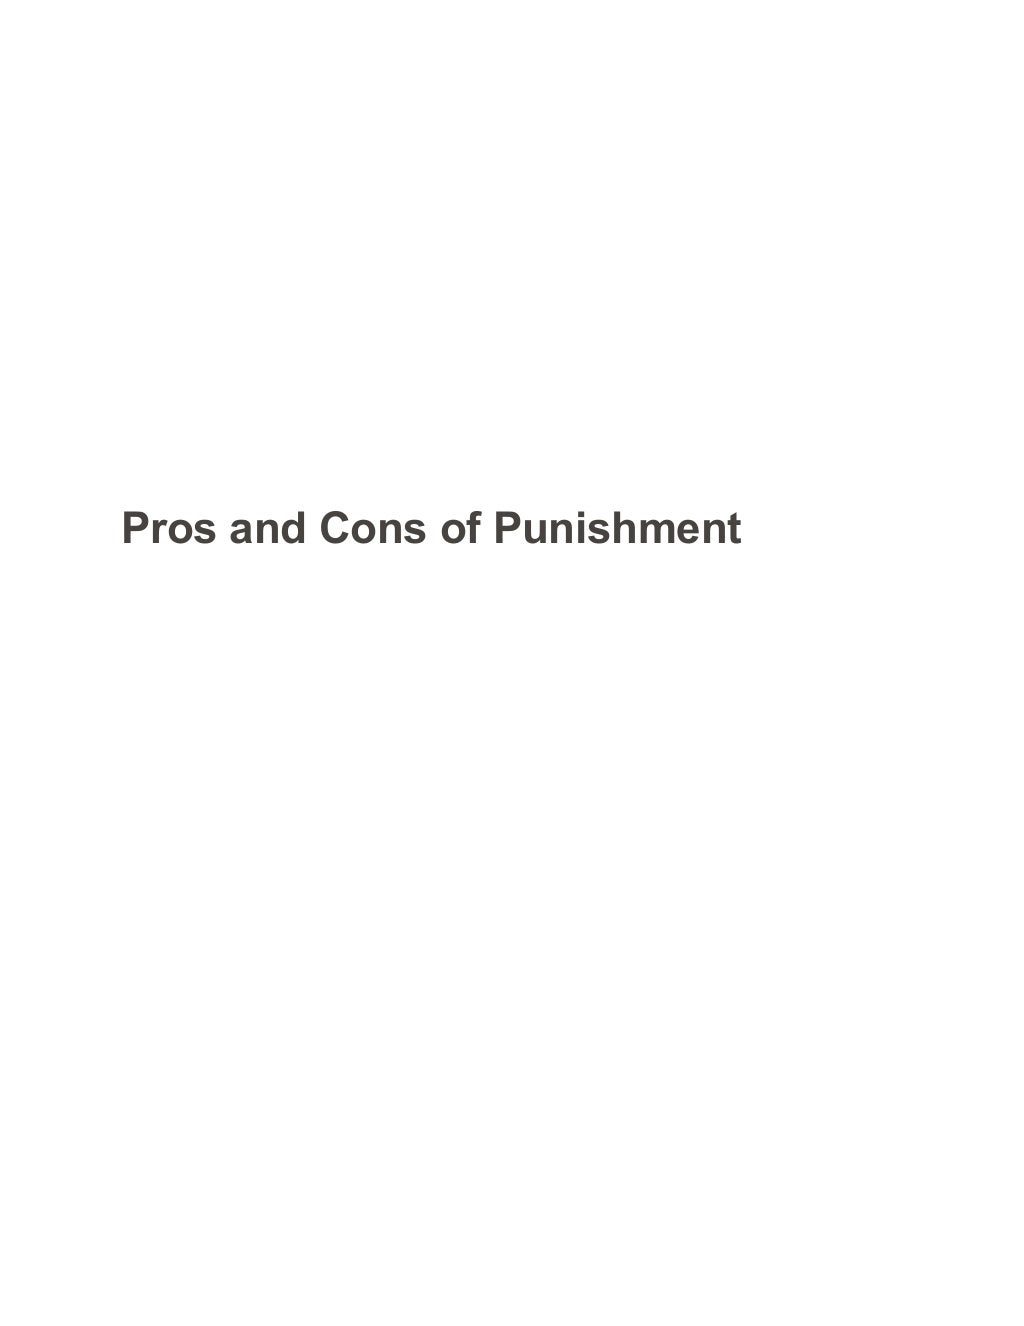 punishment essay titles